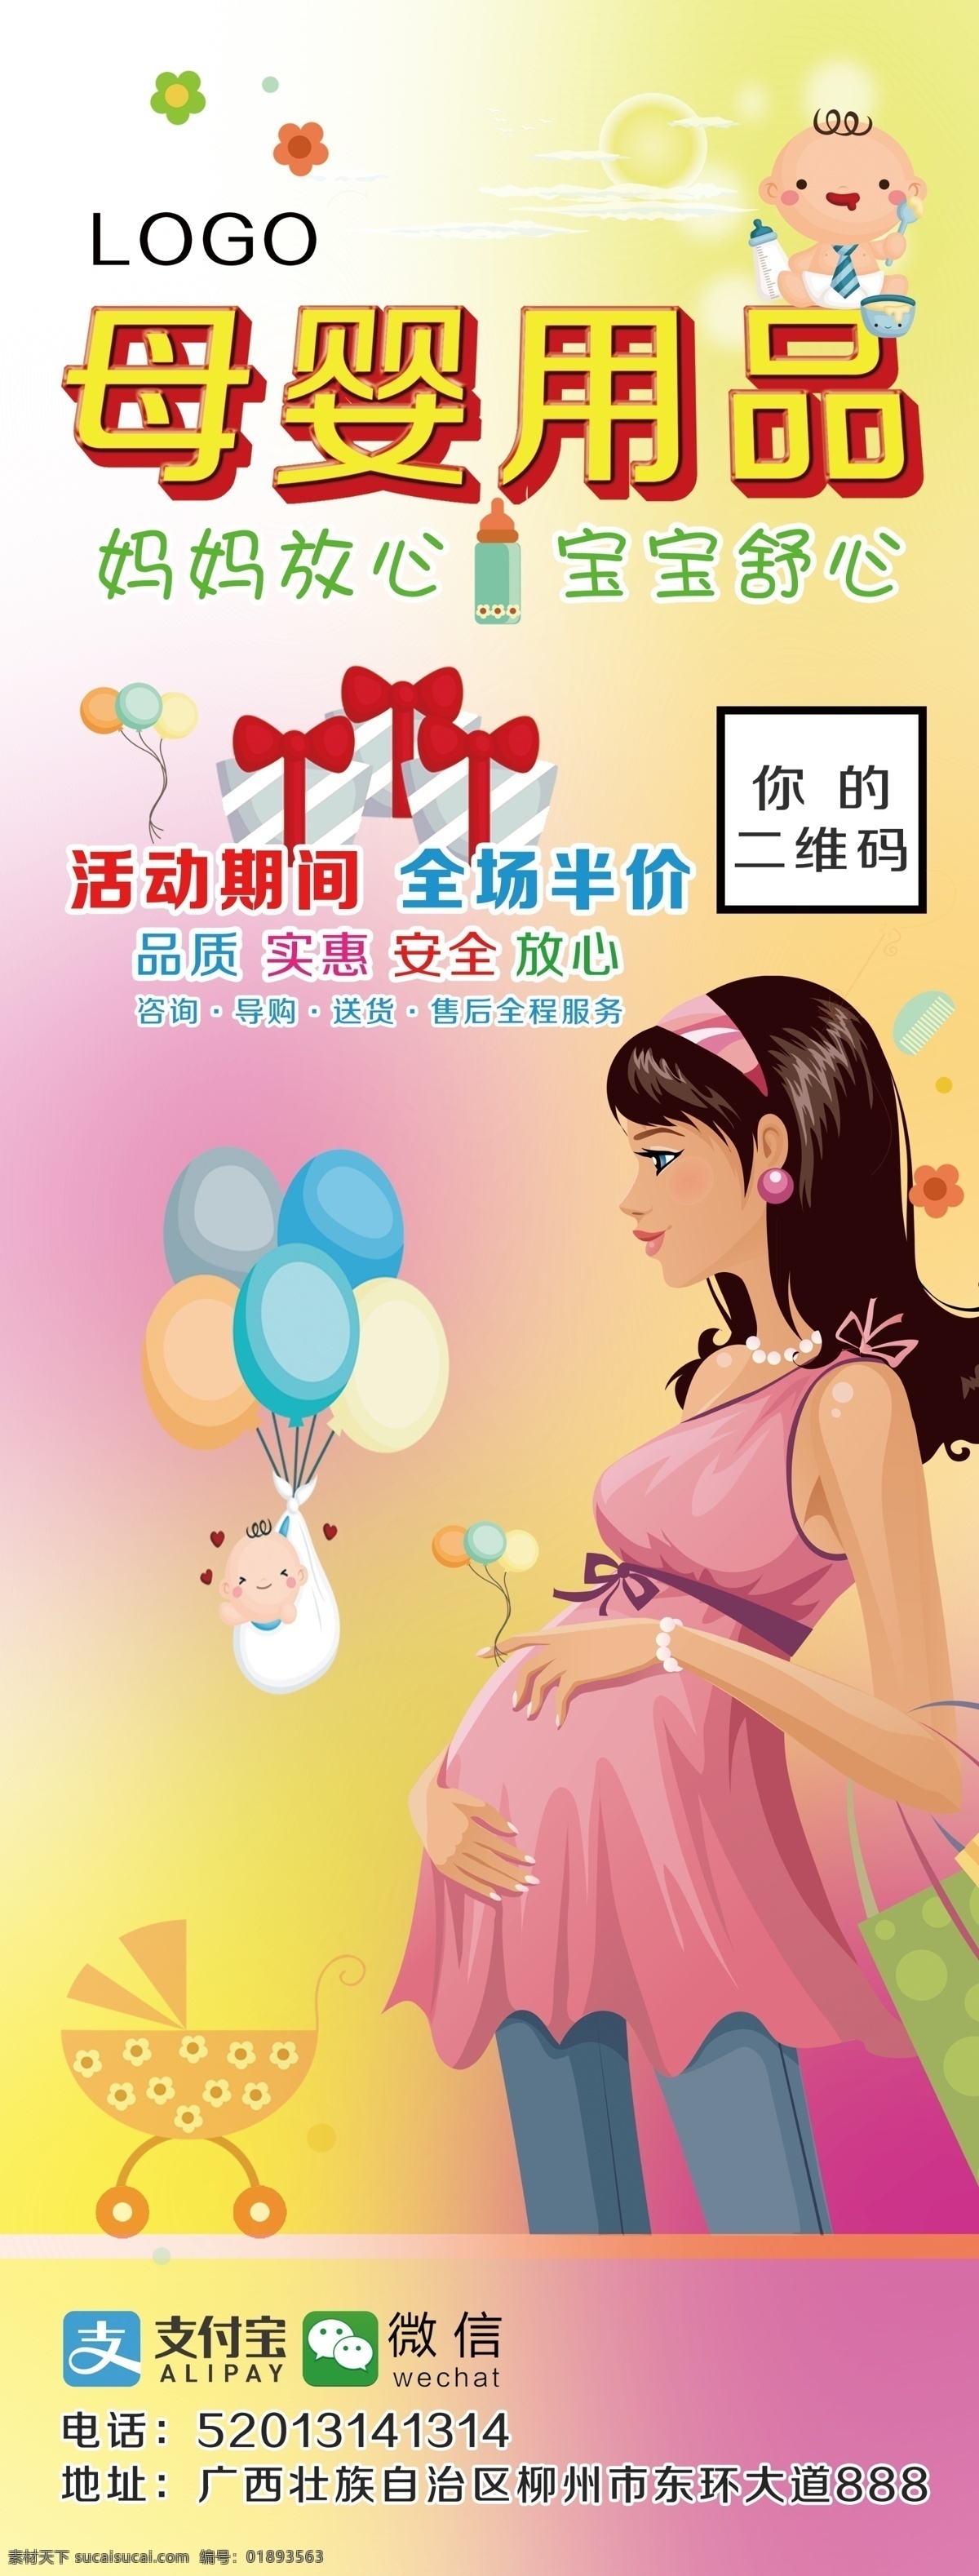 母婴用品海报 展架 母婴用品展架 母婴用品素材 母婴节日活动 卡通妈妈 卡通孕妇